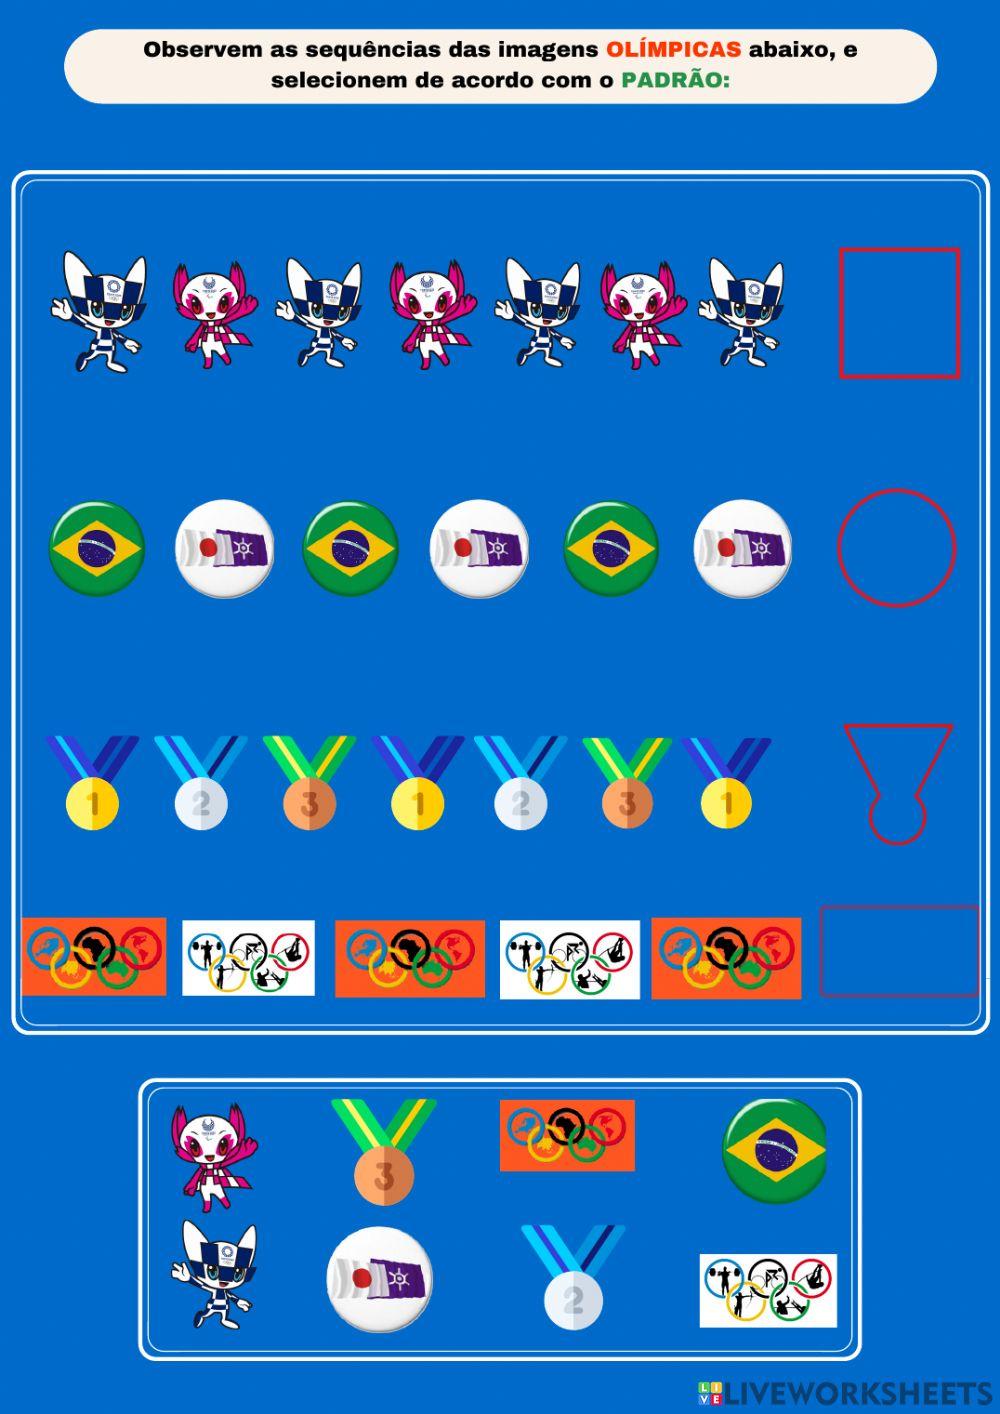 Observem as imagens dos símbolos olímpicos, e selecionem de acordo com o padrão.